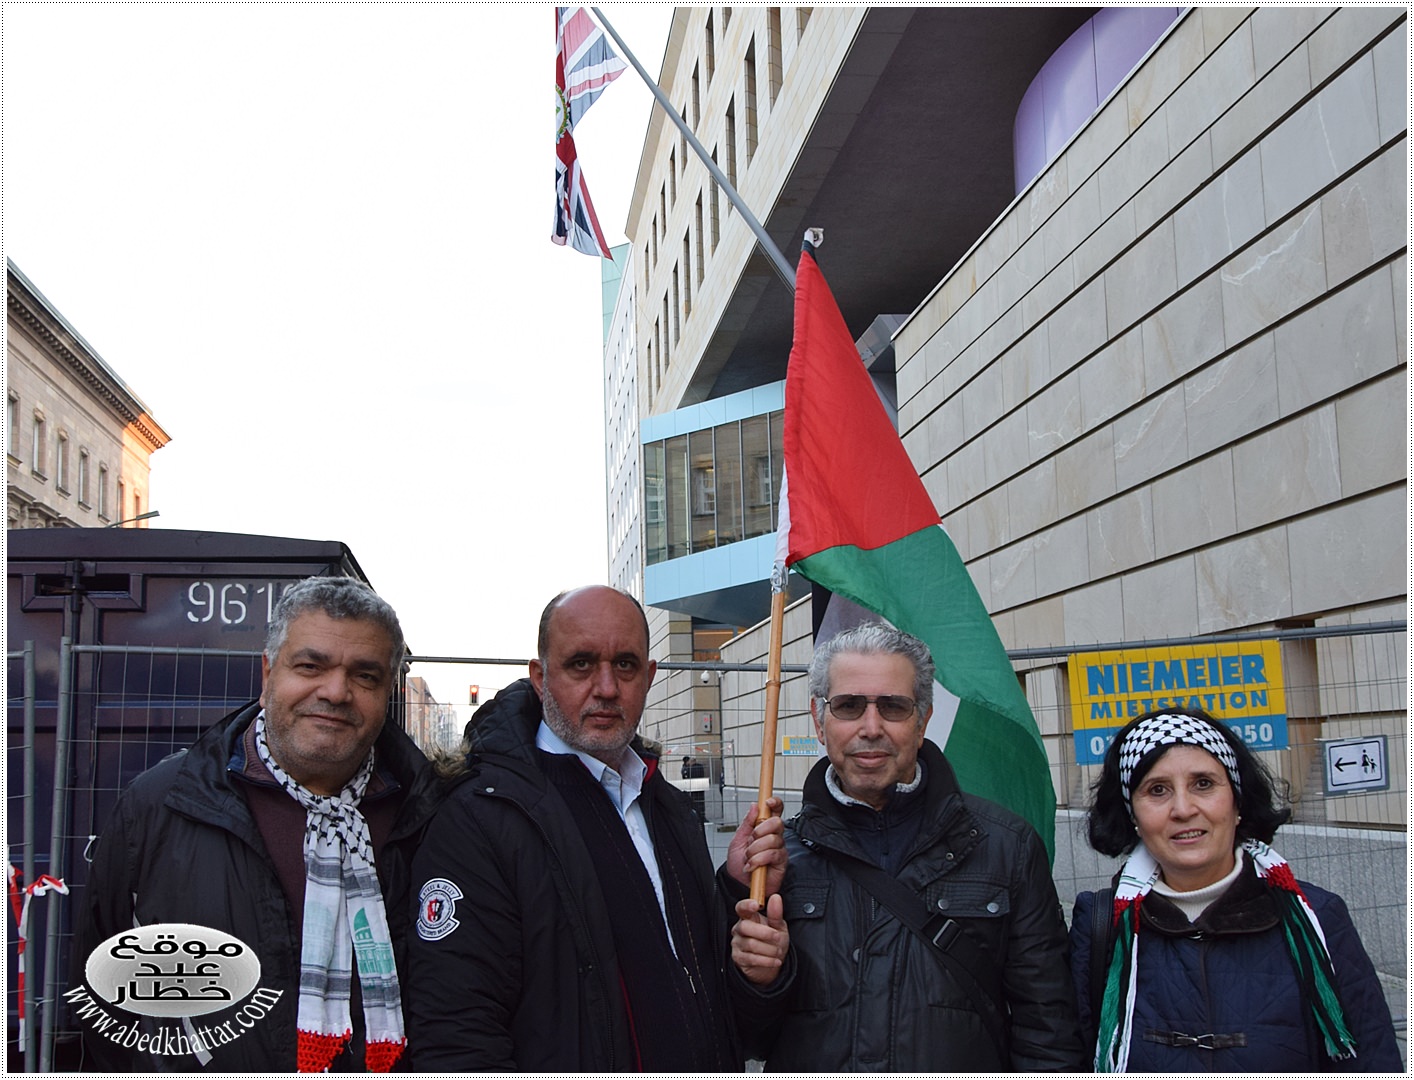 لجنة العمل الوطني الفلسطيني في برلين والذكرى المئوية لوعد بلفور